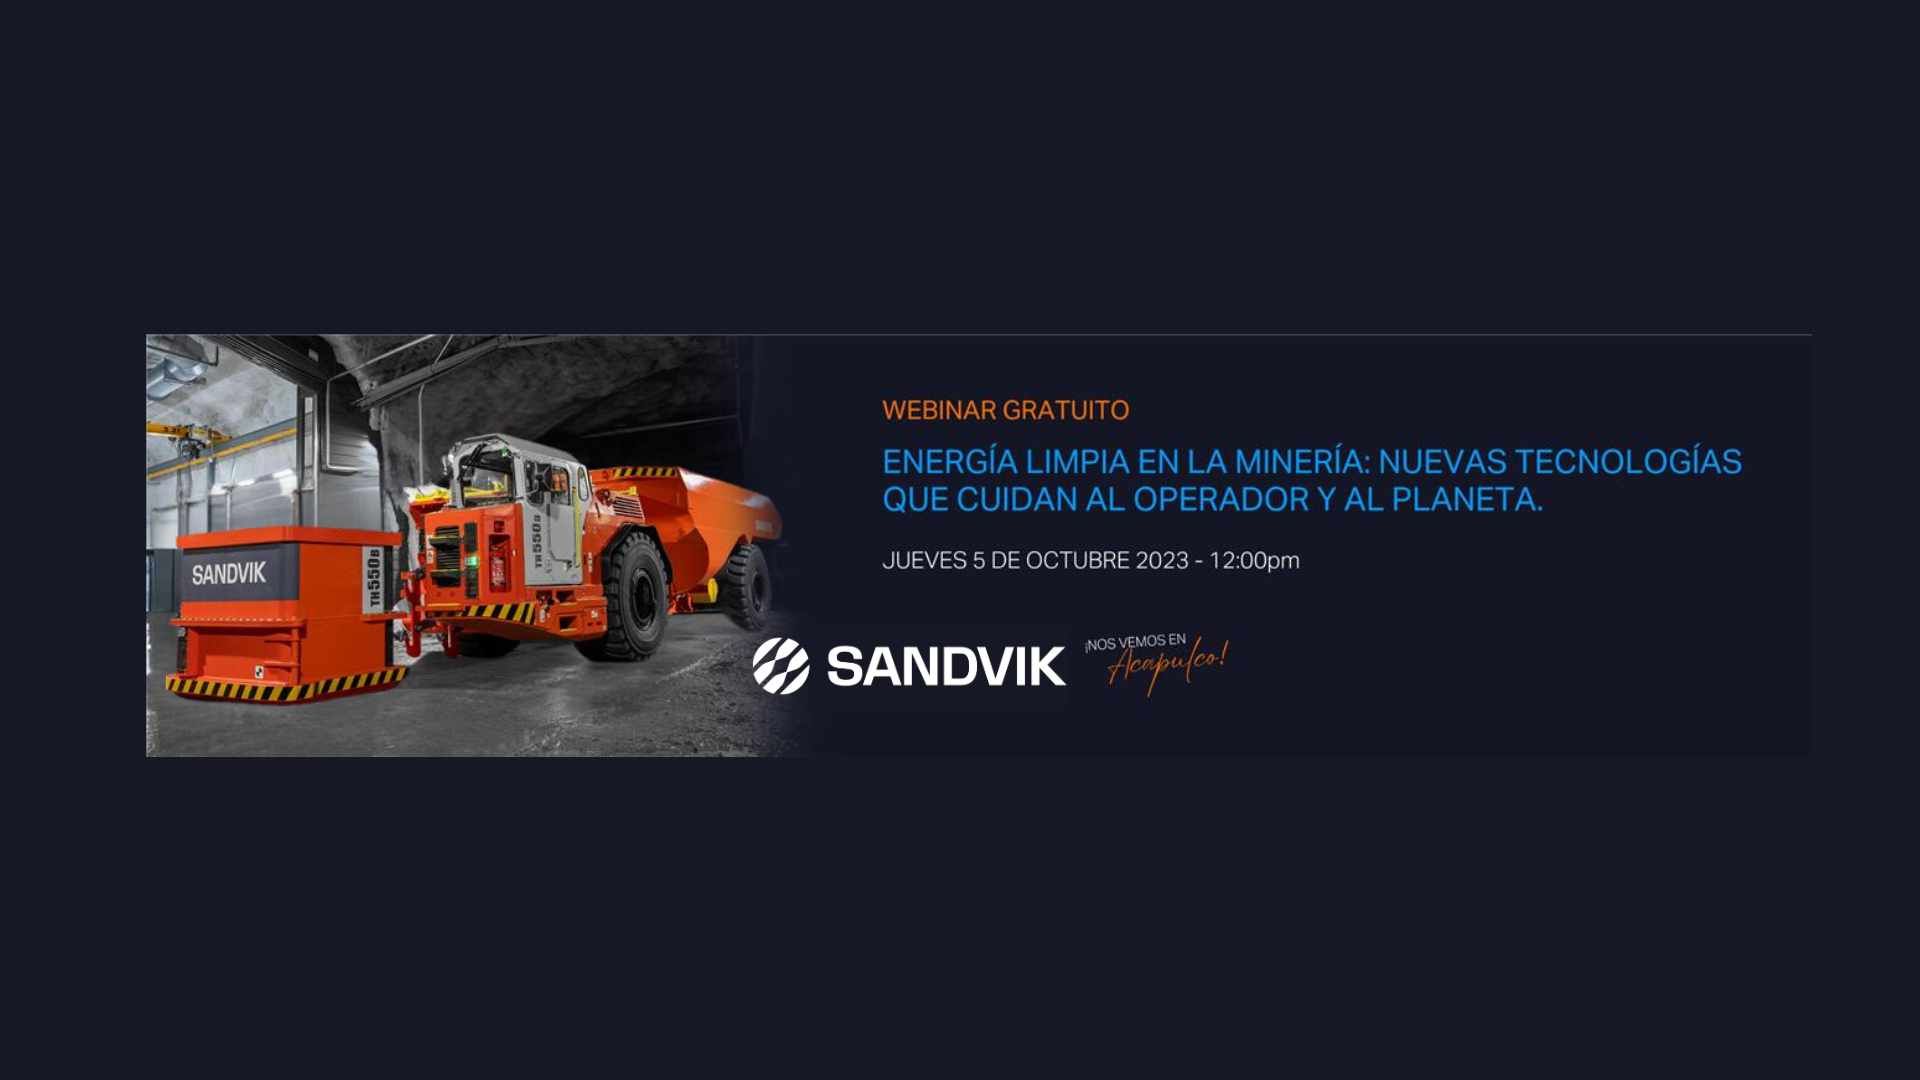 Energía Limpia en la Minería: Sandvik Lidera el Cambio hacia Vehículos a Batería.